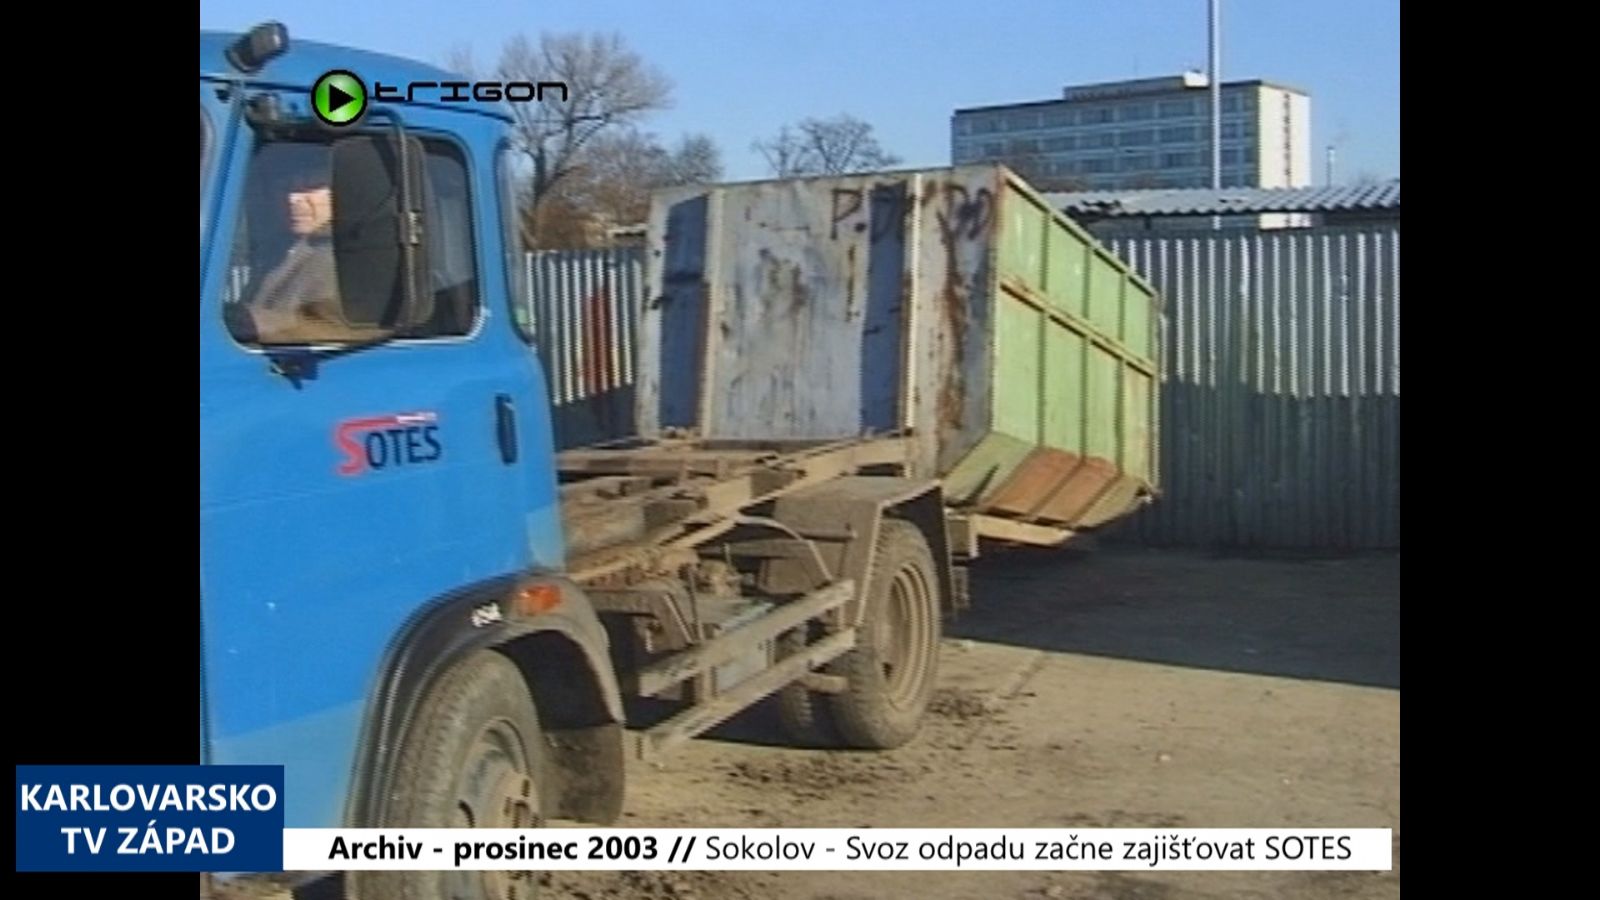 2003 – Sokolov: Svoz odpadu začne zajišťovat SOTES (TV Západ)